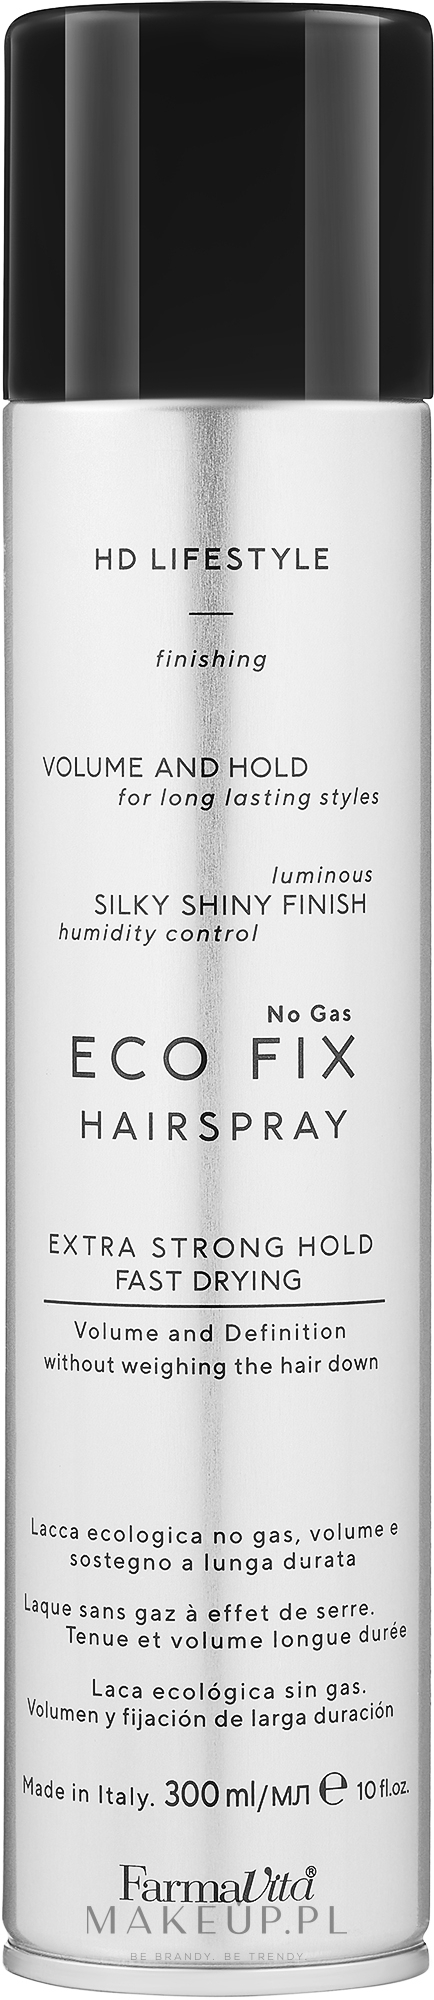 hd eco fix no gas lakier do włosów